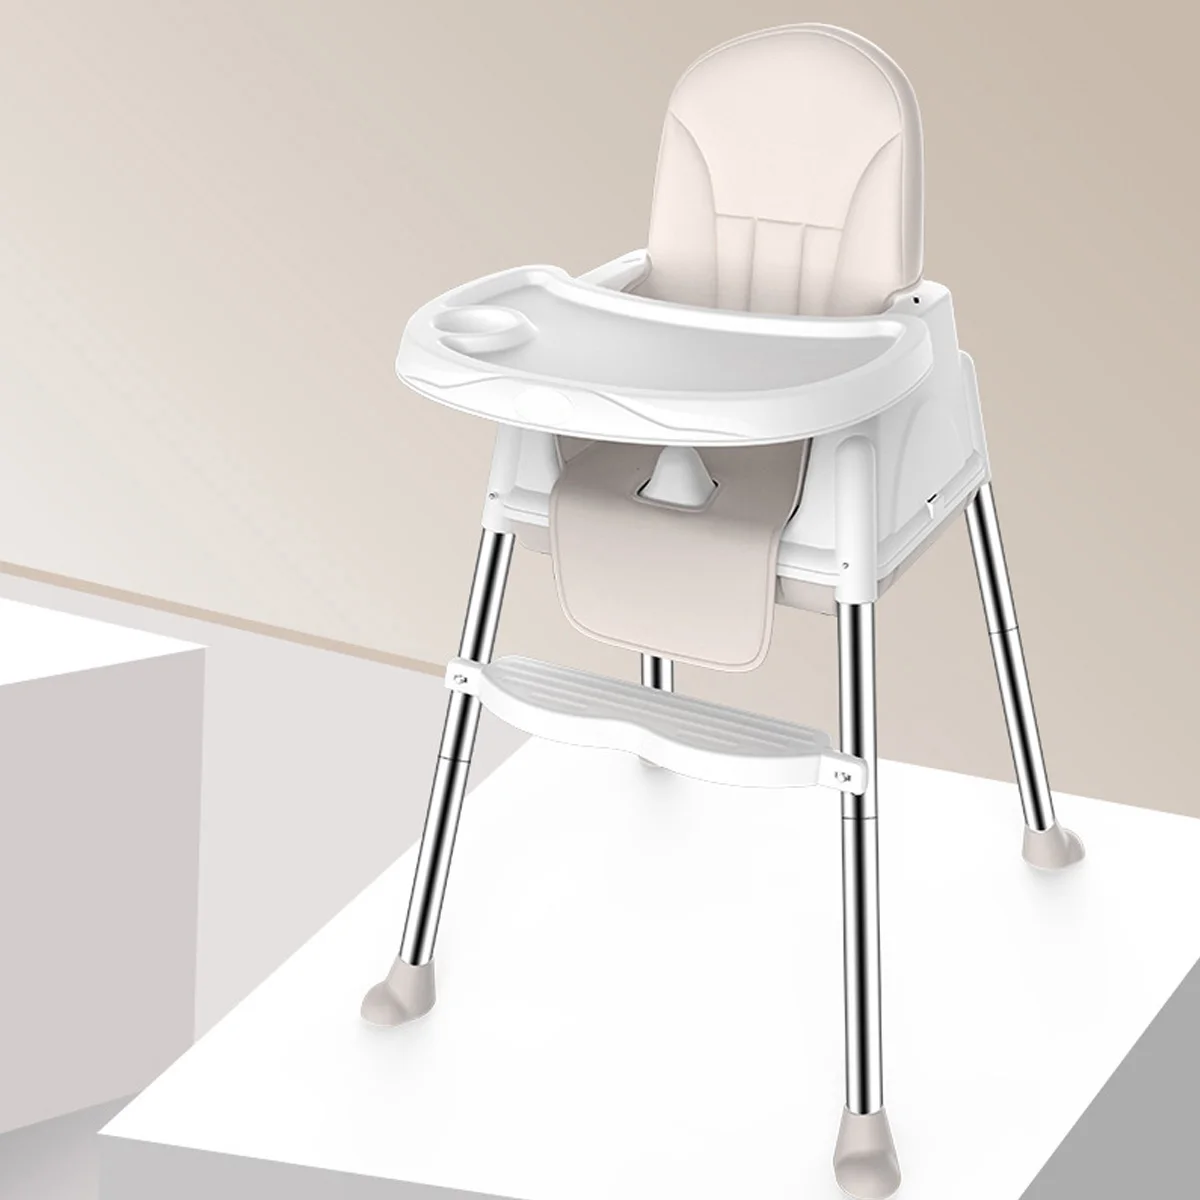 6-36 месяцев Аутентичное портативное детское сиденье детский обеденный стол многофункциональные регулируемые складные стулья для детей - Цвет: Бежевый